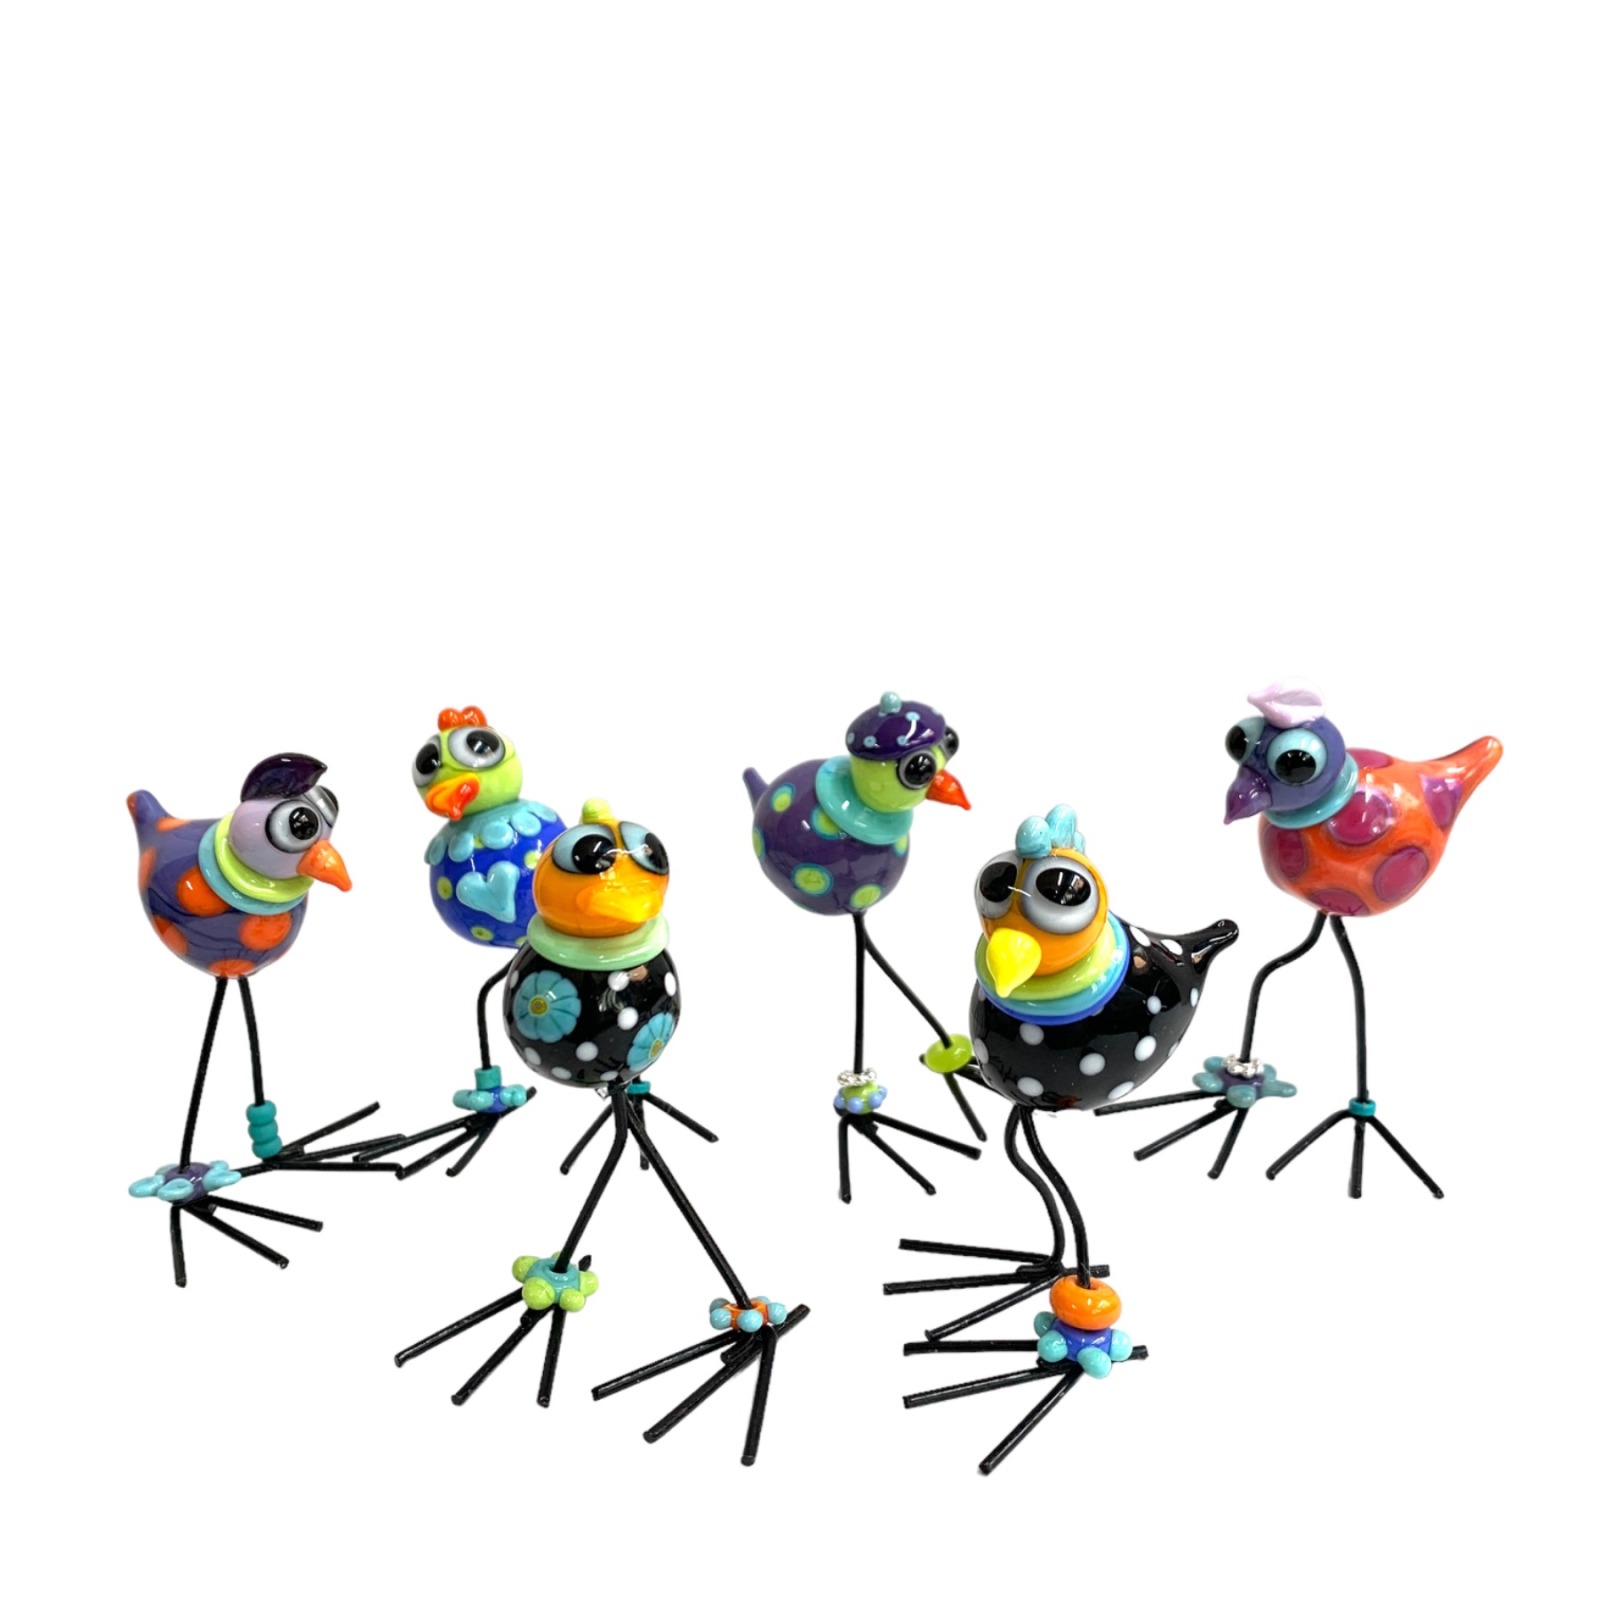 Silly Bird - Lustiger Vogel, witzige Deko, kleiner bunter Glasvogel zum Hinstellen, Mitbringsel 8